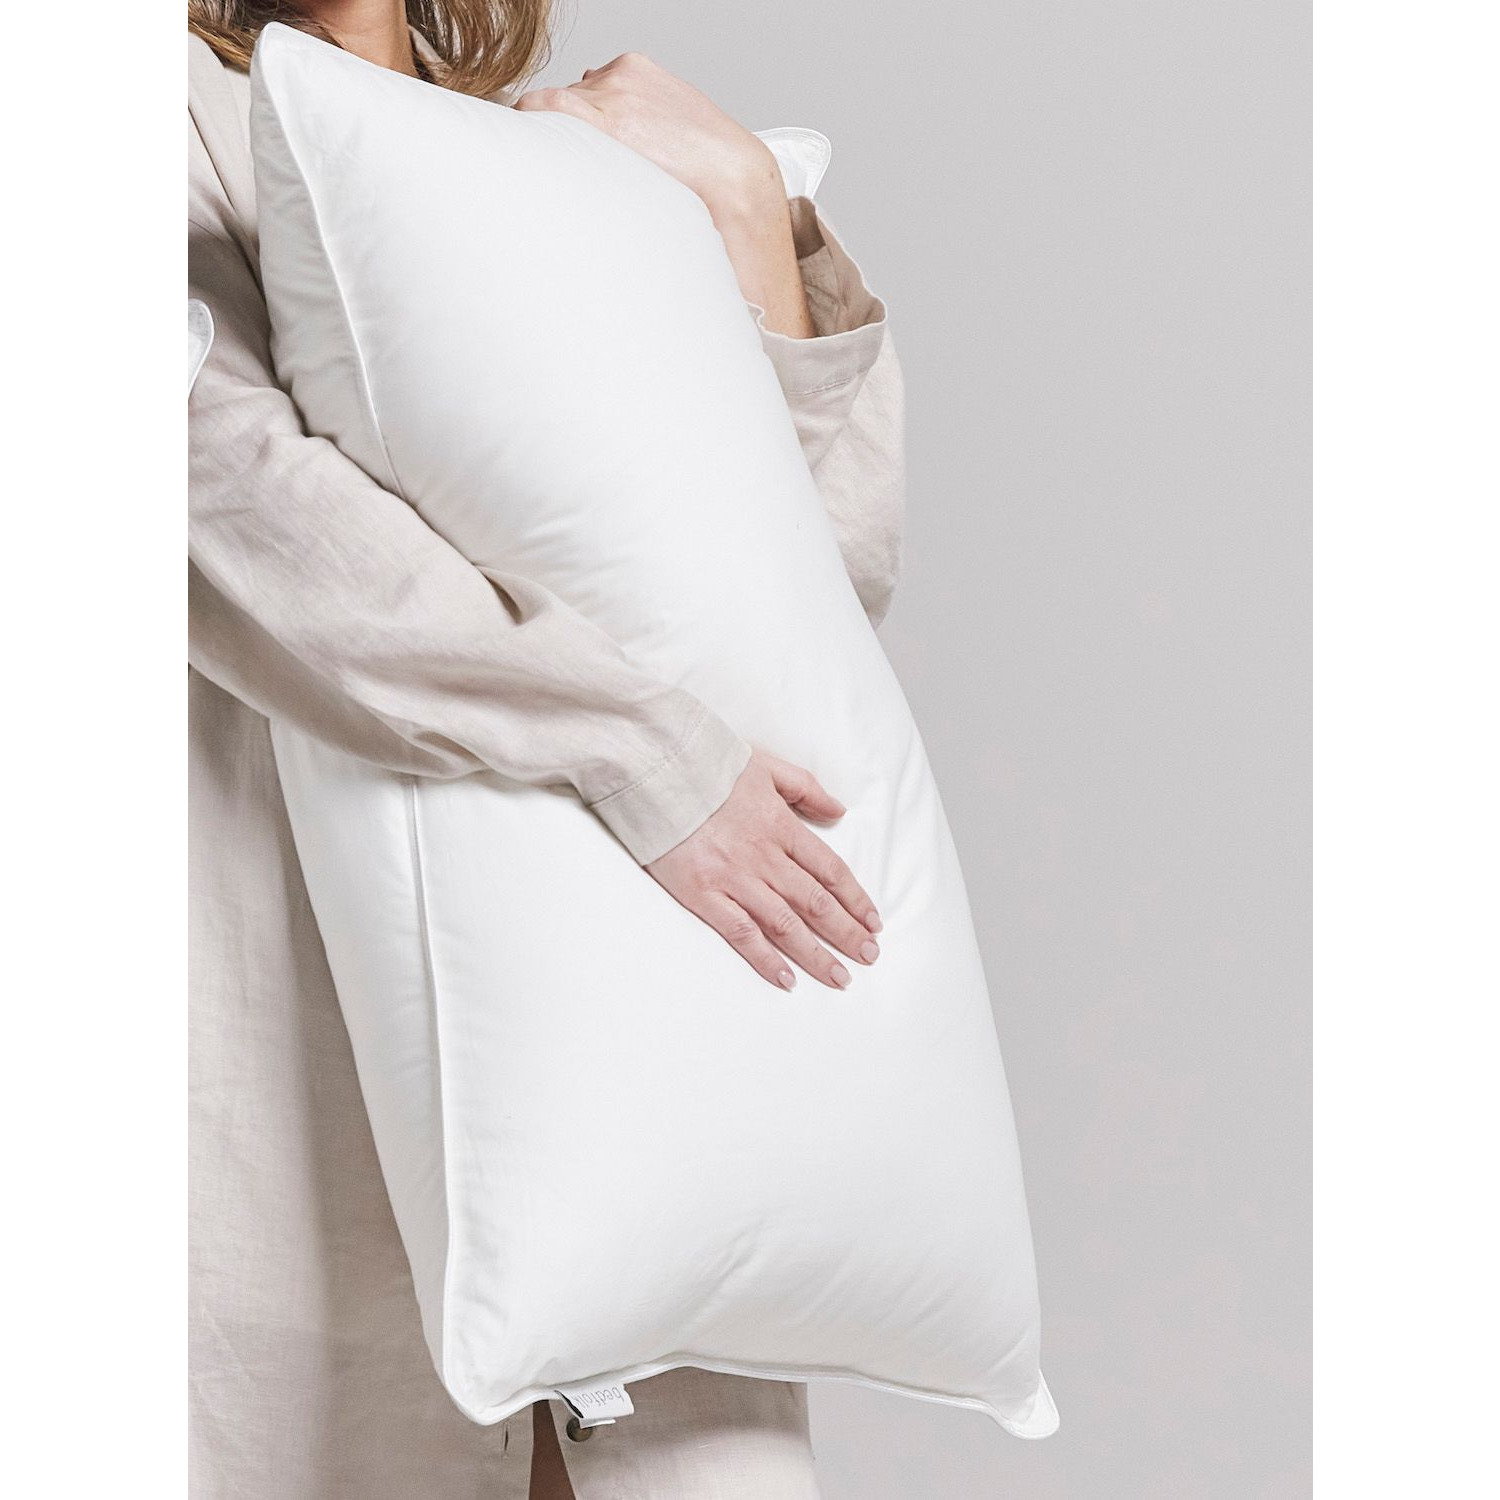 Bedfolk Down Alternative Standard Pillow, Firm - image 1